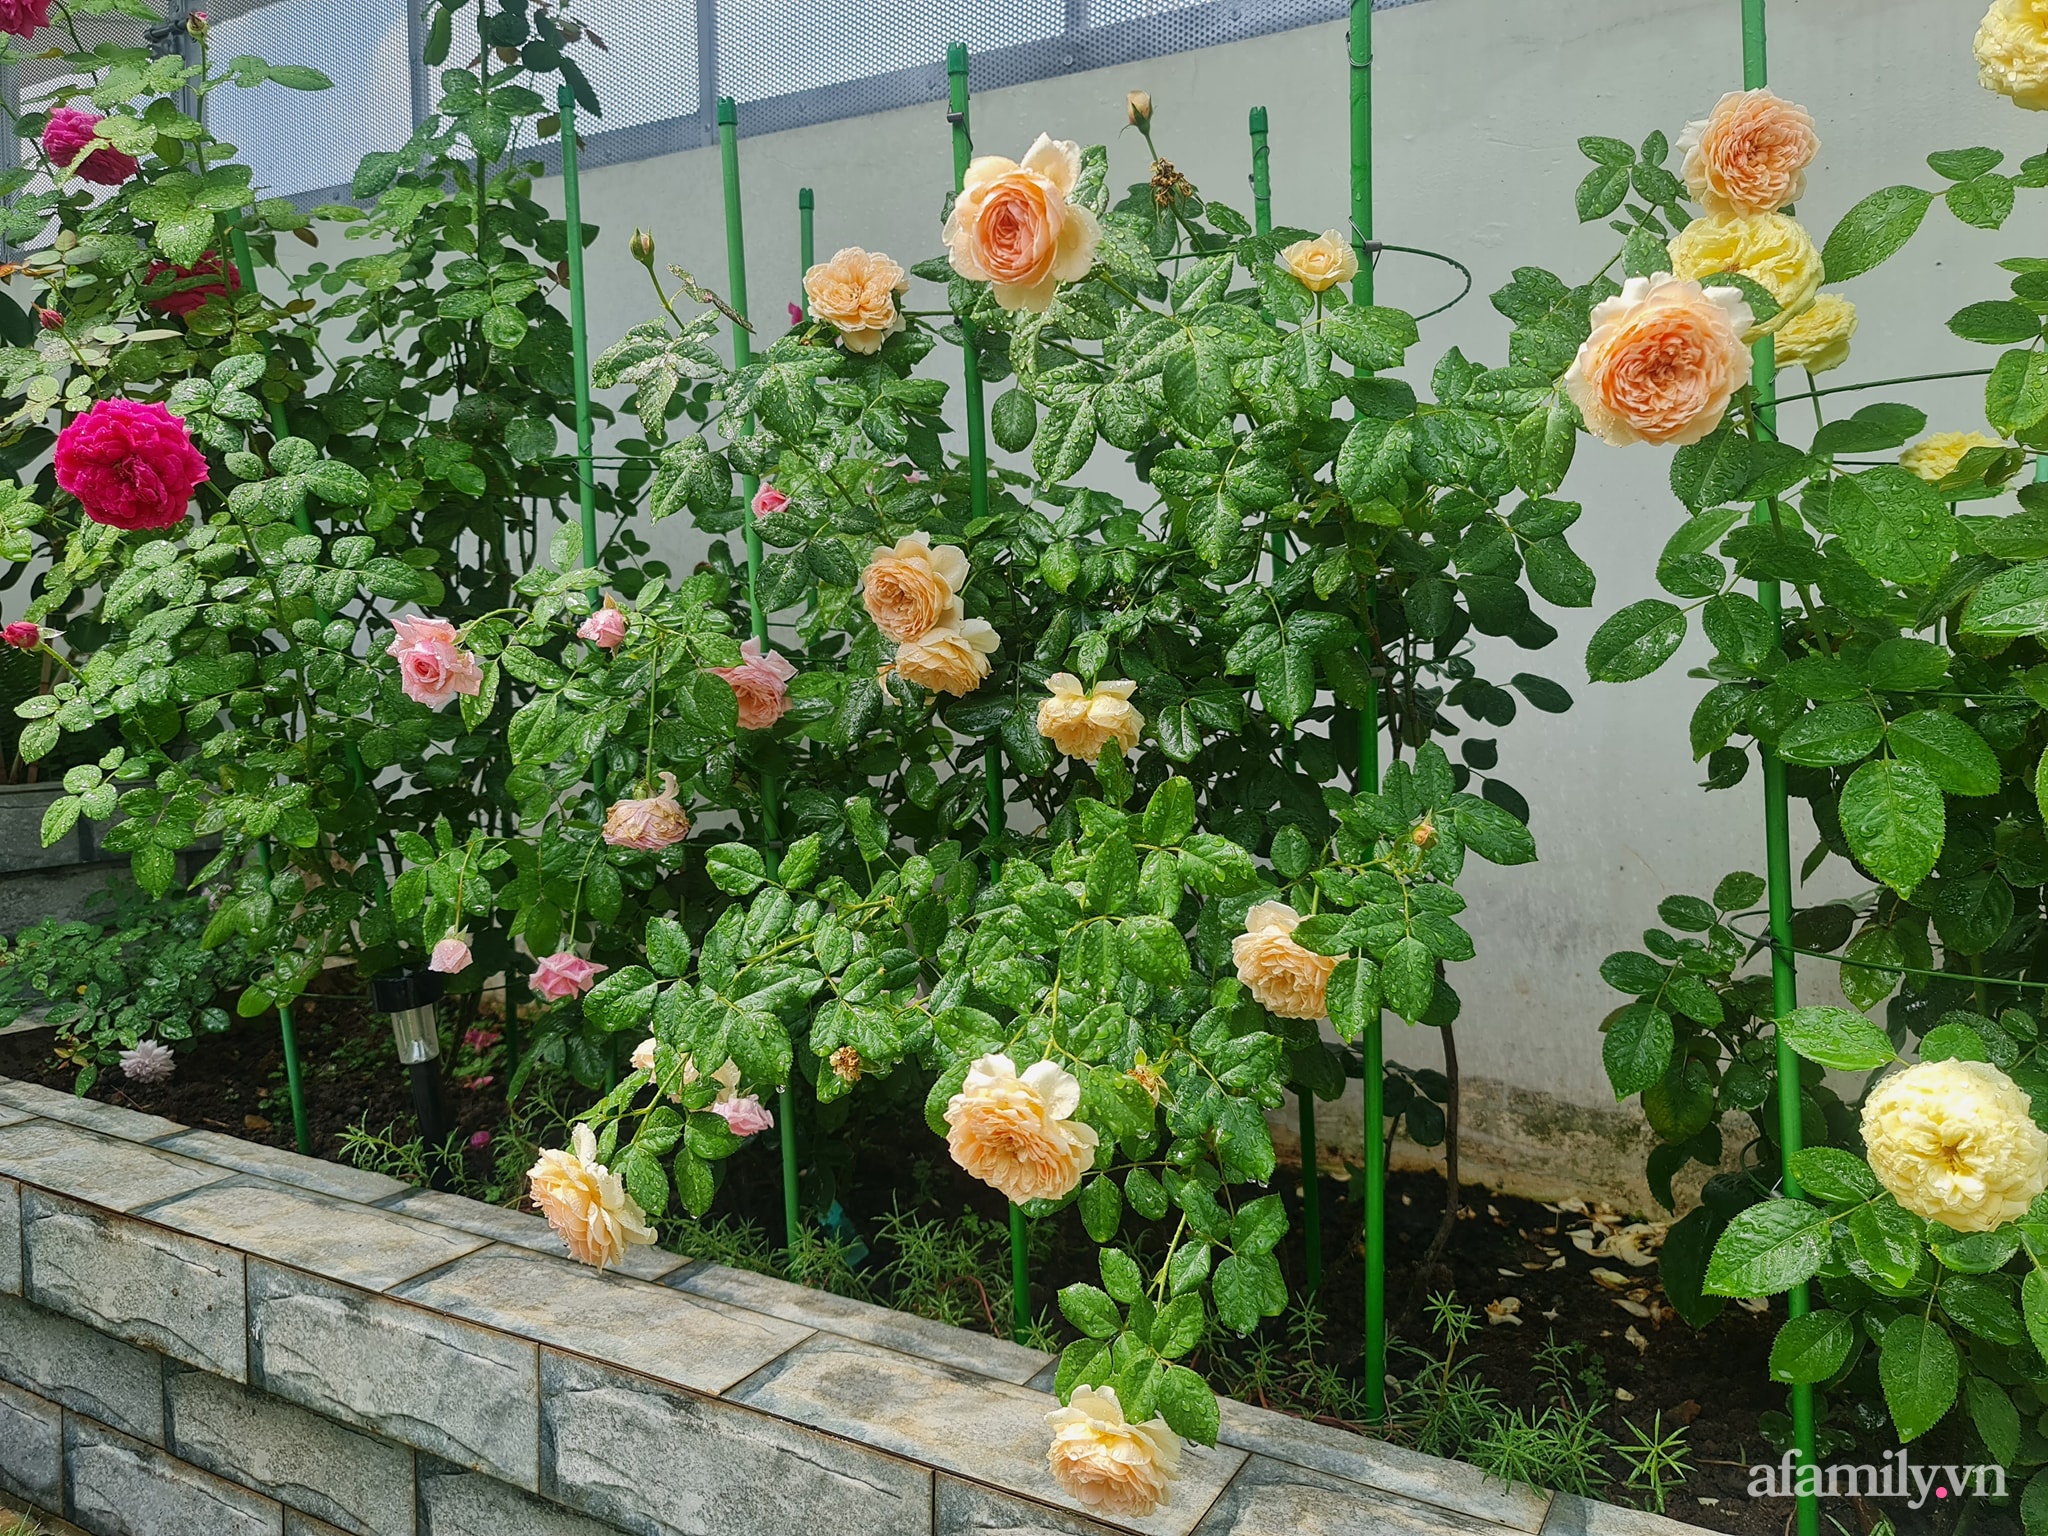 Đắm say trước vẻ đẹp ngọt lịm tim của vườn hồng rực rỡ trên sân thượng ở Bình Dương - Ảnh 14.